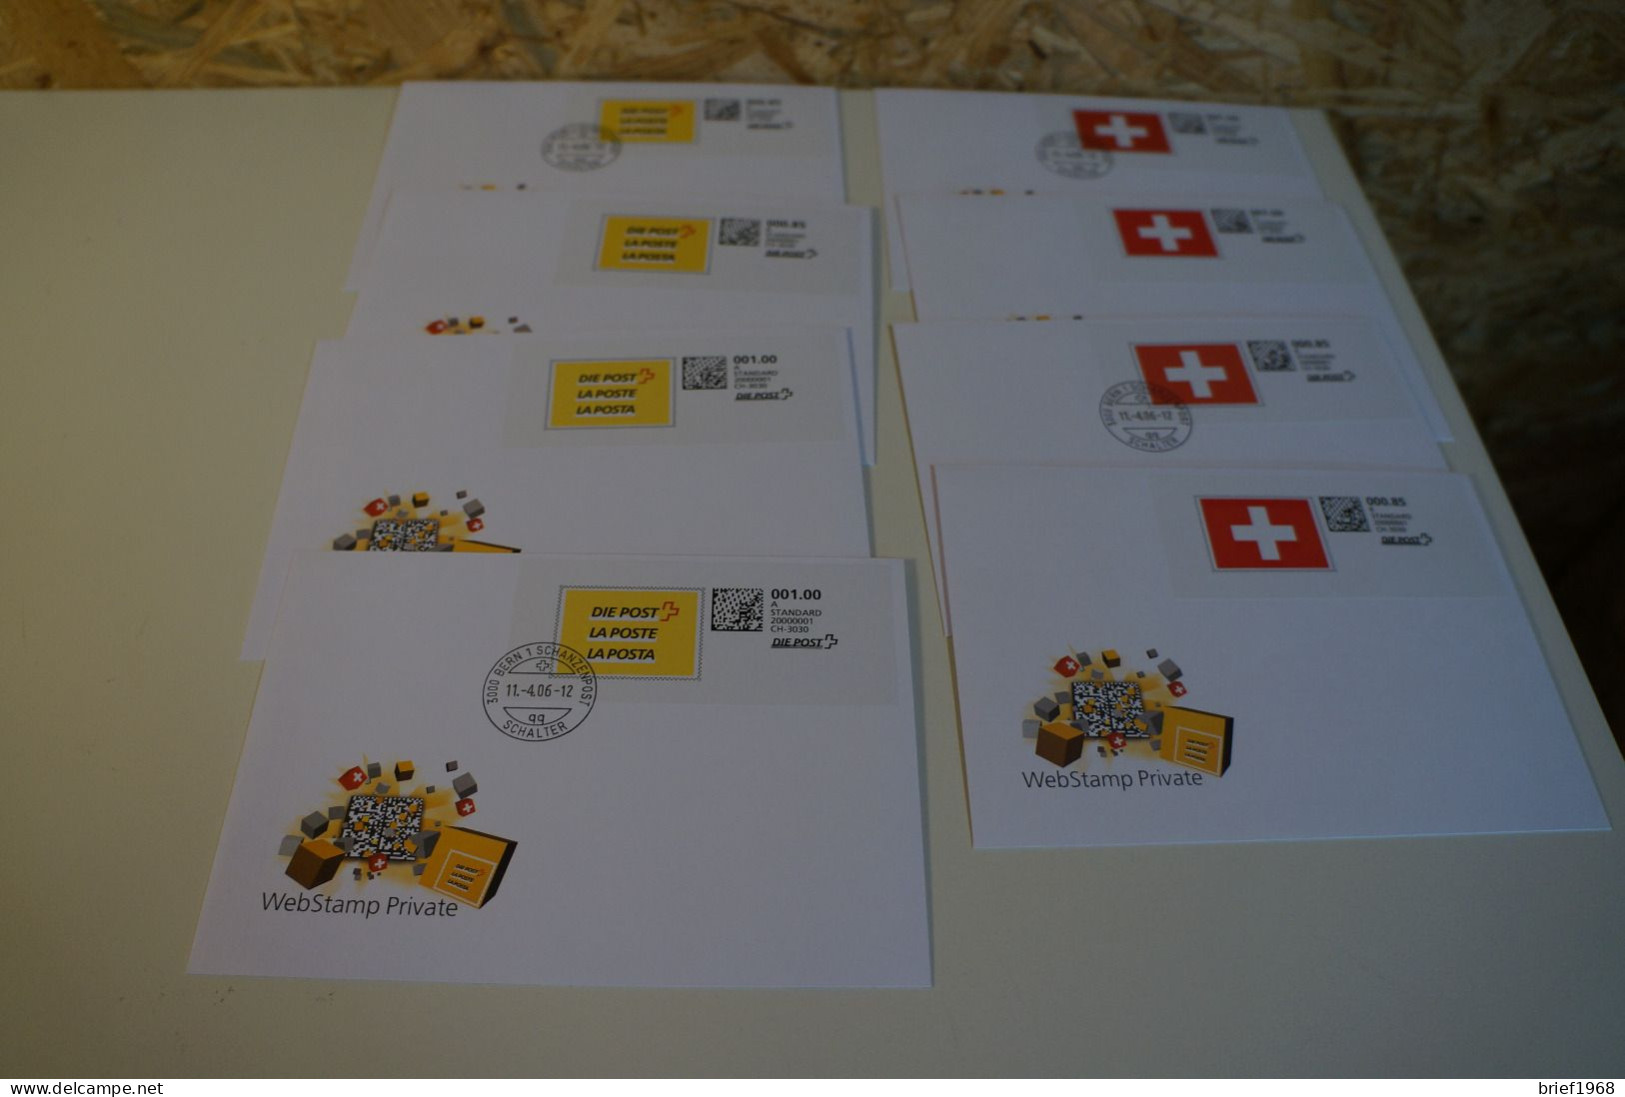 Schweiz Web Stamp Private 2006 8 Belege (28100) - Sammlungen